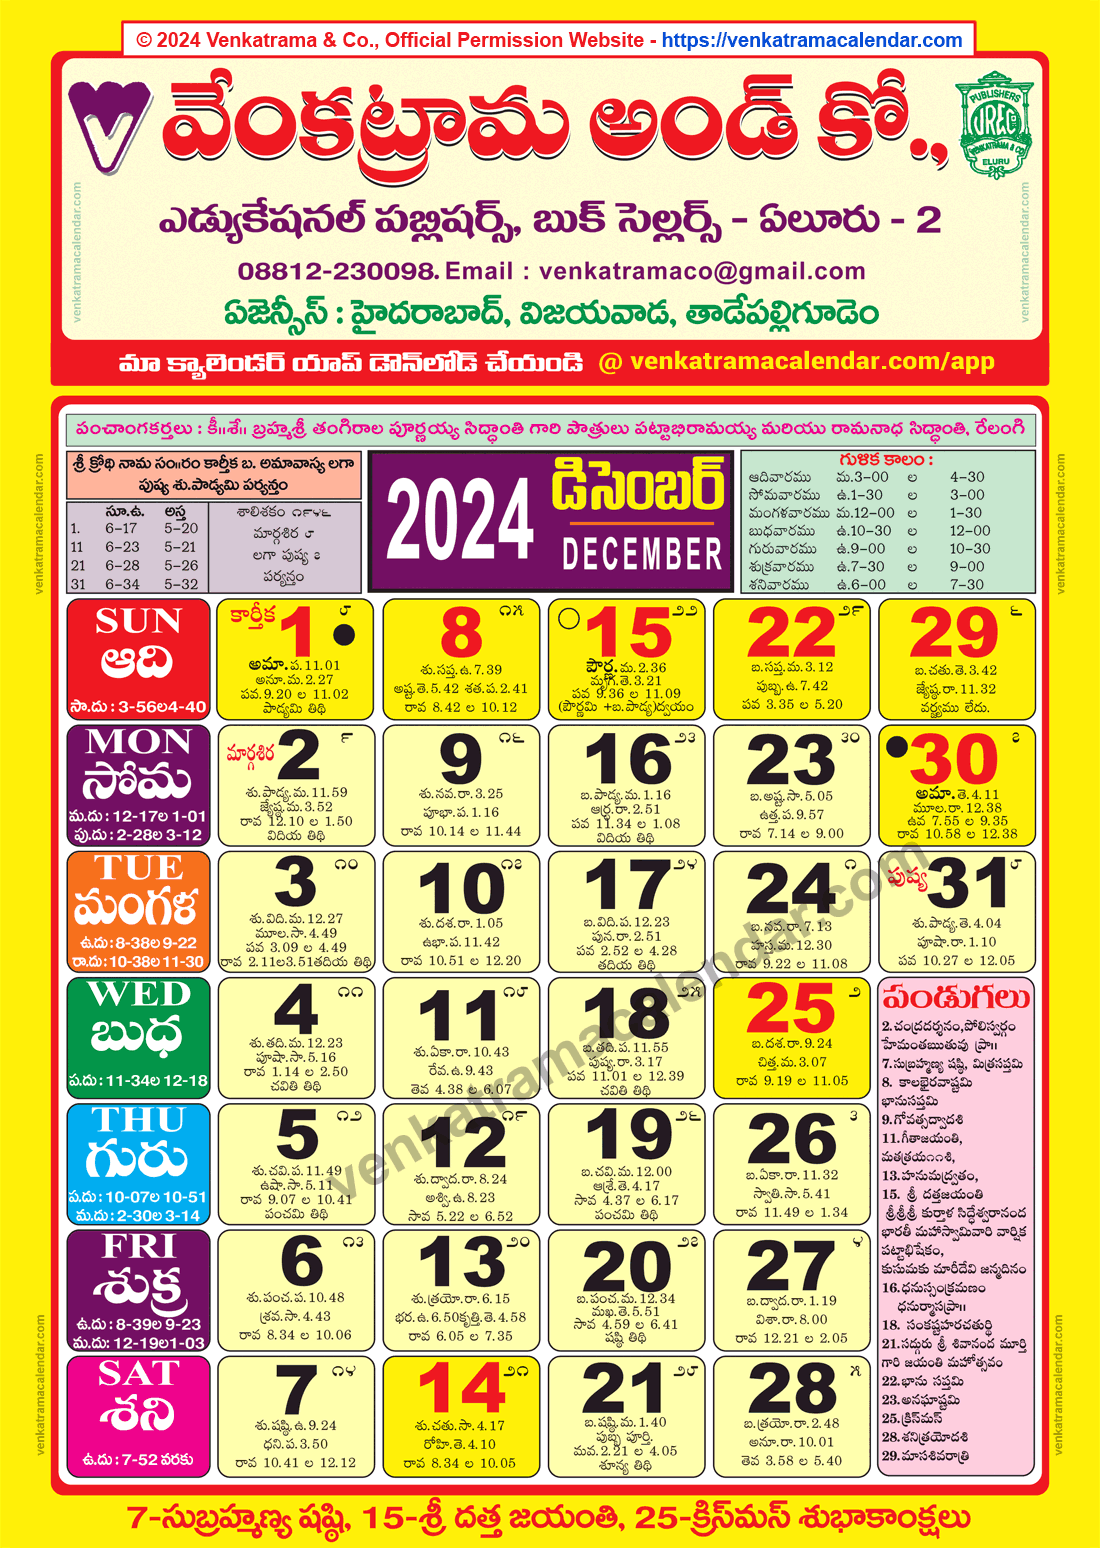 Venkatrama Calendar 2024 December Venkatrama Telugu Calendar 2024